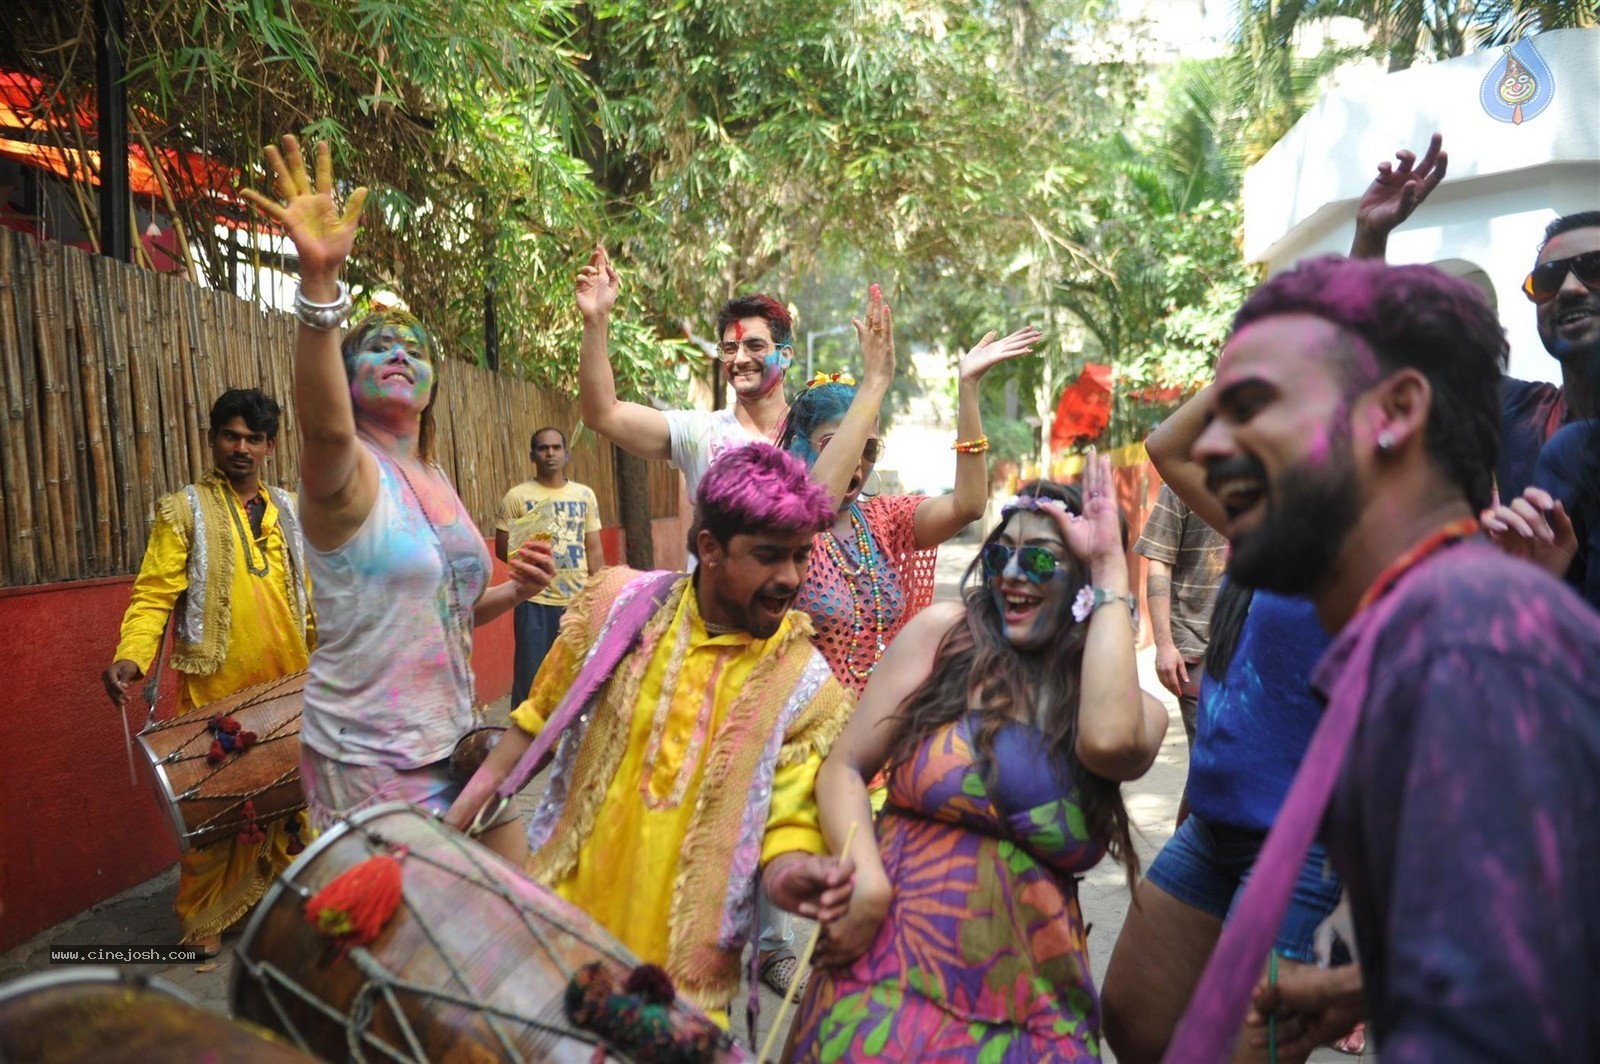 Bolly Celebs at Holi 2015 Celebrations - 9 / 73 photos